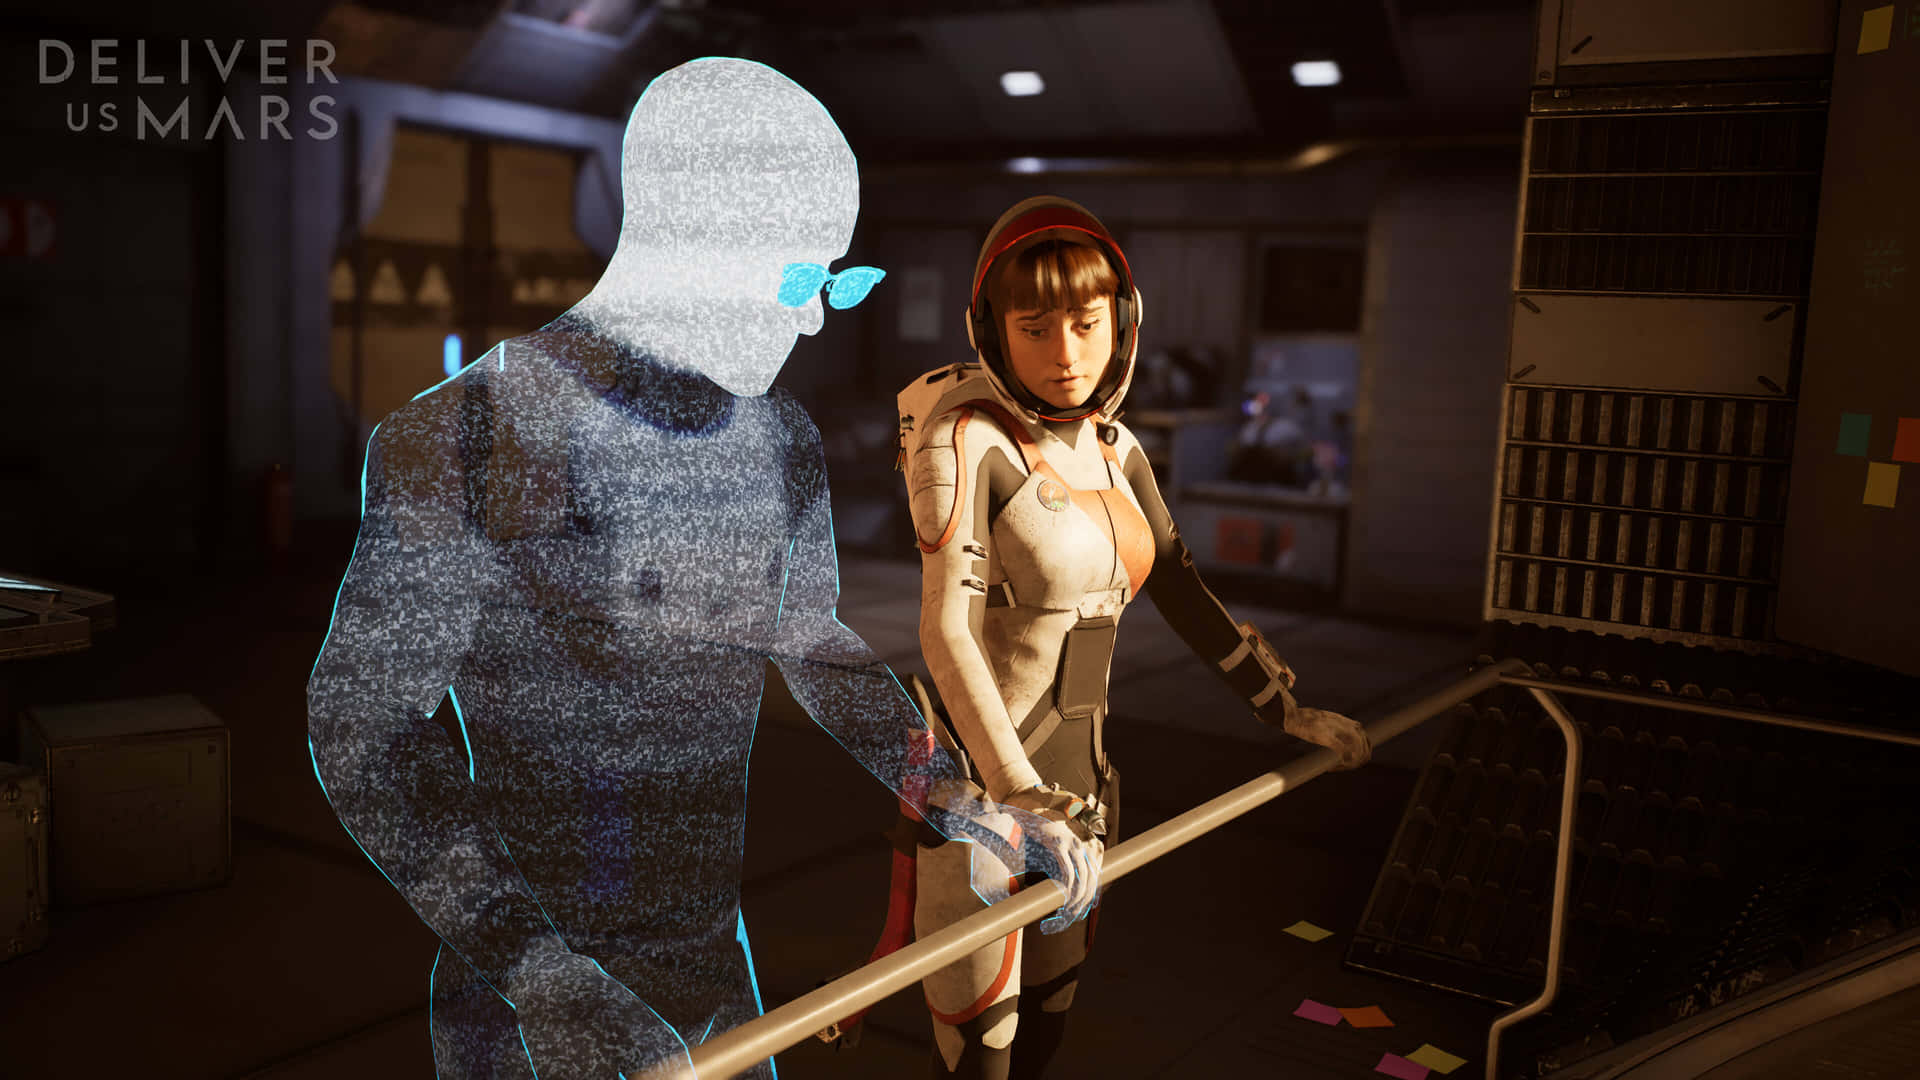 Futuristic Battle Scene in a Sci-Fi Game Wallpaper